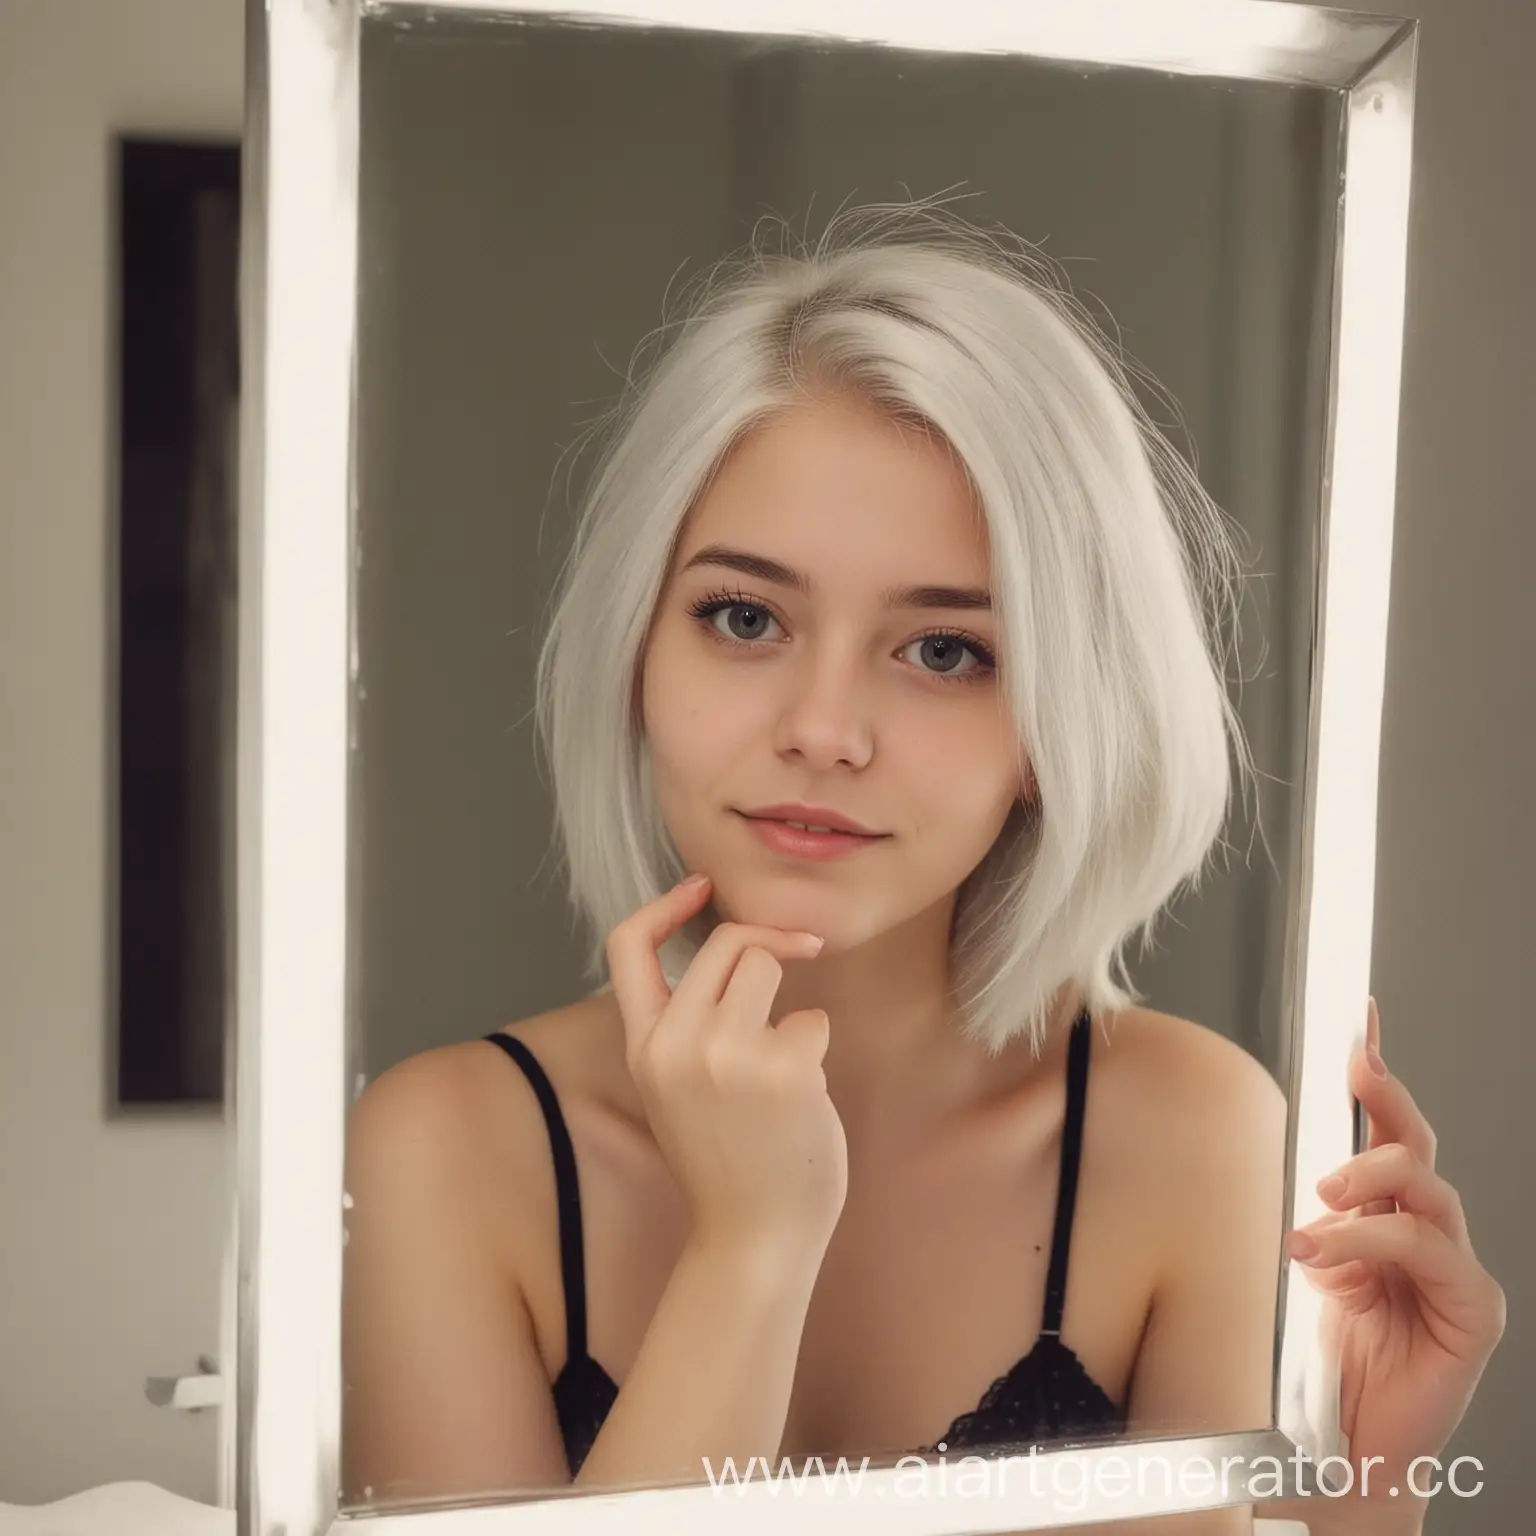 девушка, 20 лет, белые волосы, фотографирует себя в зеркале